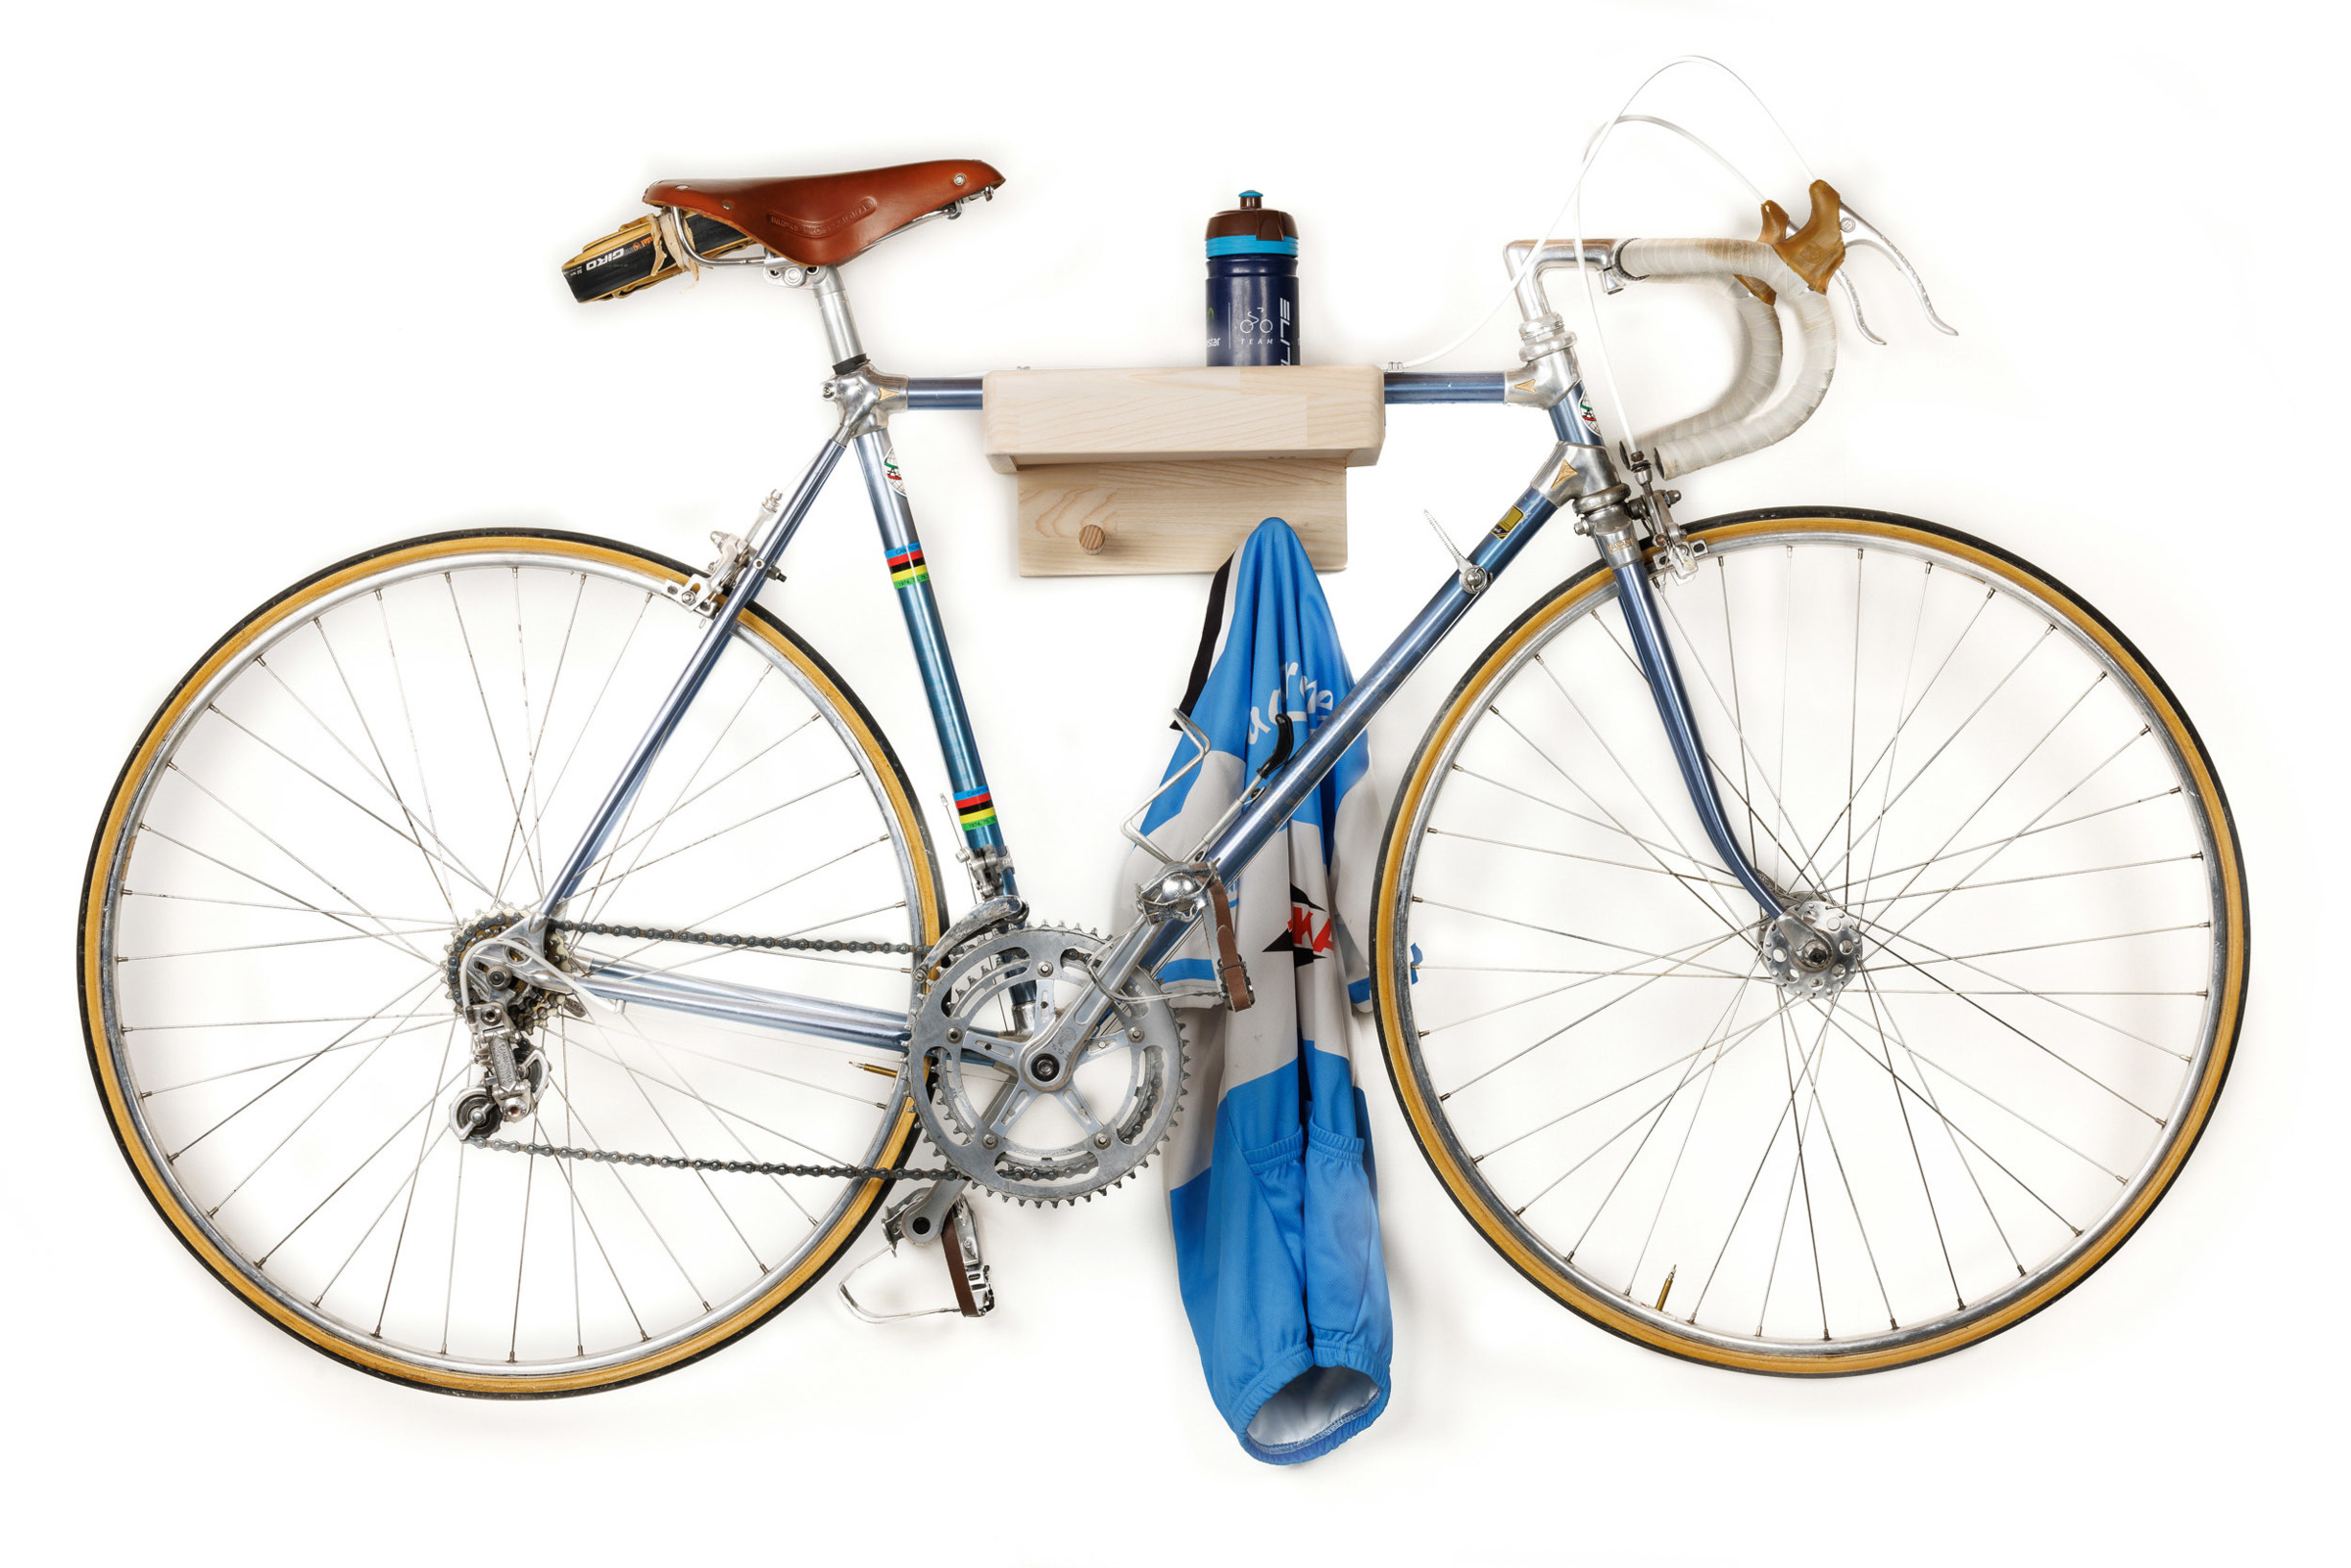 Porte-vélo en bois original et pratique pour support de vélo en appartement  - MANUFACTURE JACQUEMIN